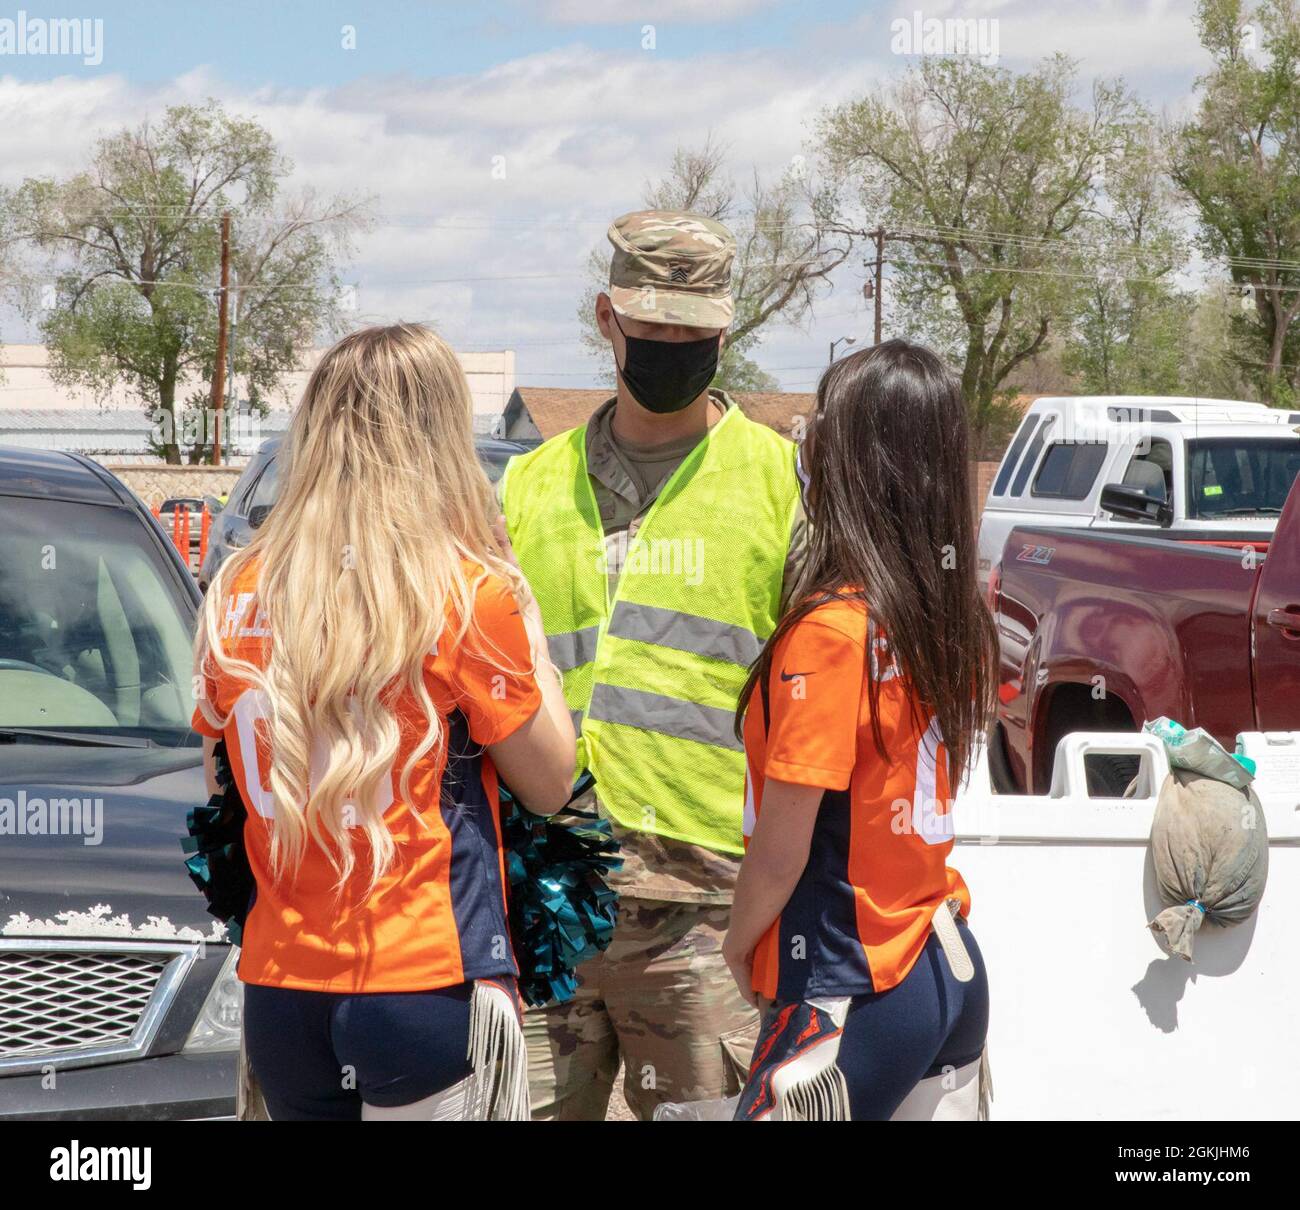 US Army Sgt. James Hines, ein Kavallerie-Scout, der der 3. Staffel, dem 61. Calvary Regiment, zugewiesen wurde, spricht mit Cheerleadern der Denver Broncos im Community Impfzentrum (CVC) auf dem Colorado State Fairgrounds in Pueblo, Colorado, 4. Mai 2021. Das Maskottchen der Denver Broncos und Cheerleader besuchten den Pueblo CVC, um Soldaten und Gemeindemitglieder zu unterstützen. Das U.S. Northern Command setzt sich über die U.S. Army North weiterhin dafür ein, die Federal Emergency Management Agency im Rahmen der Reaktion der gesamten Regierung auf COVID-19 weiterhin flexibel und flexibel zu unterstützen. Stockfoto